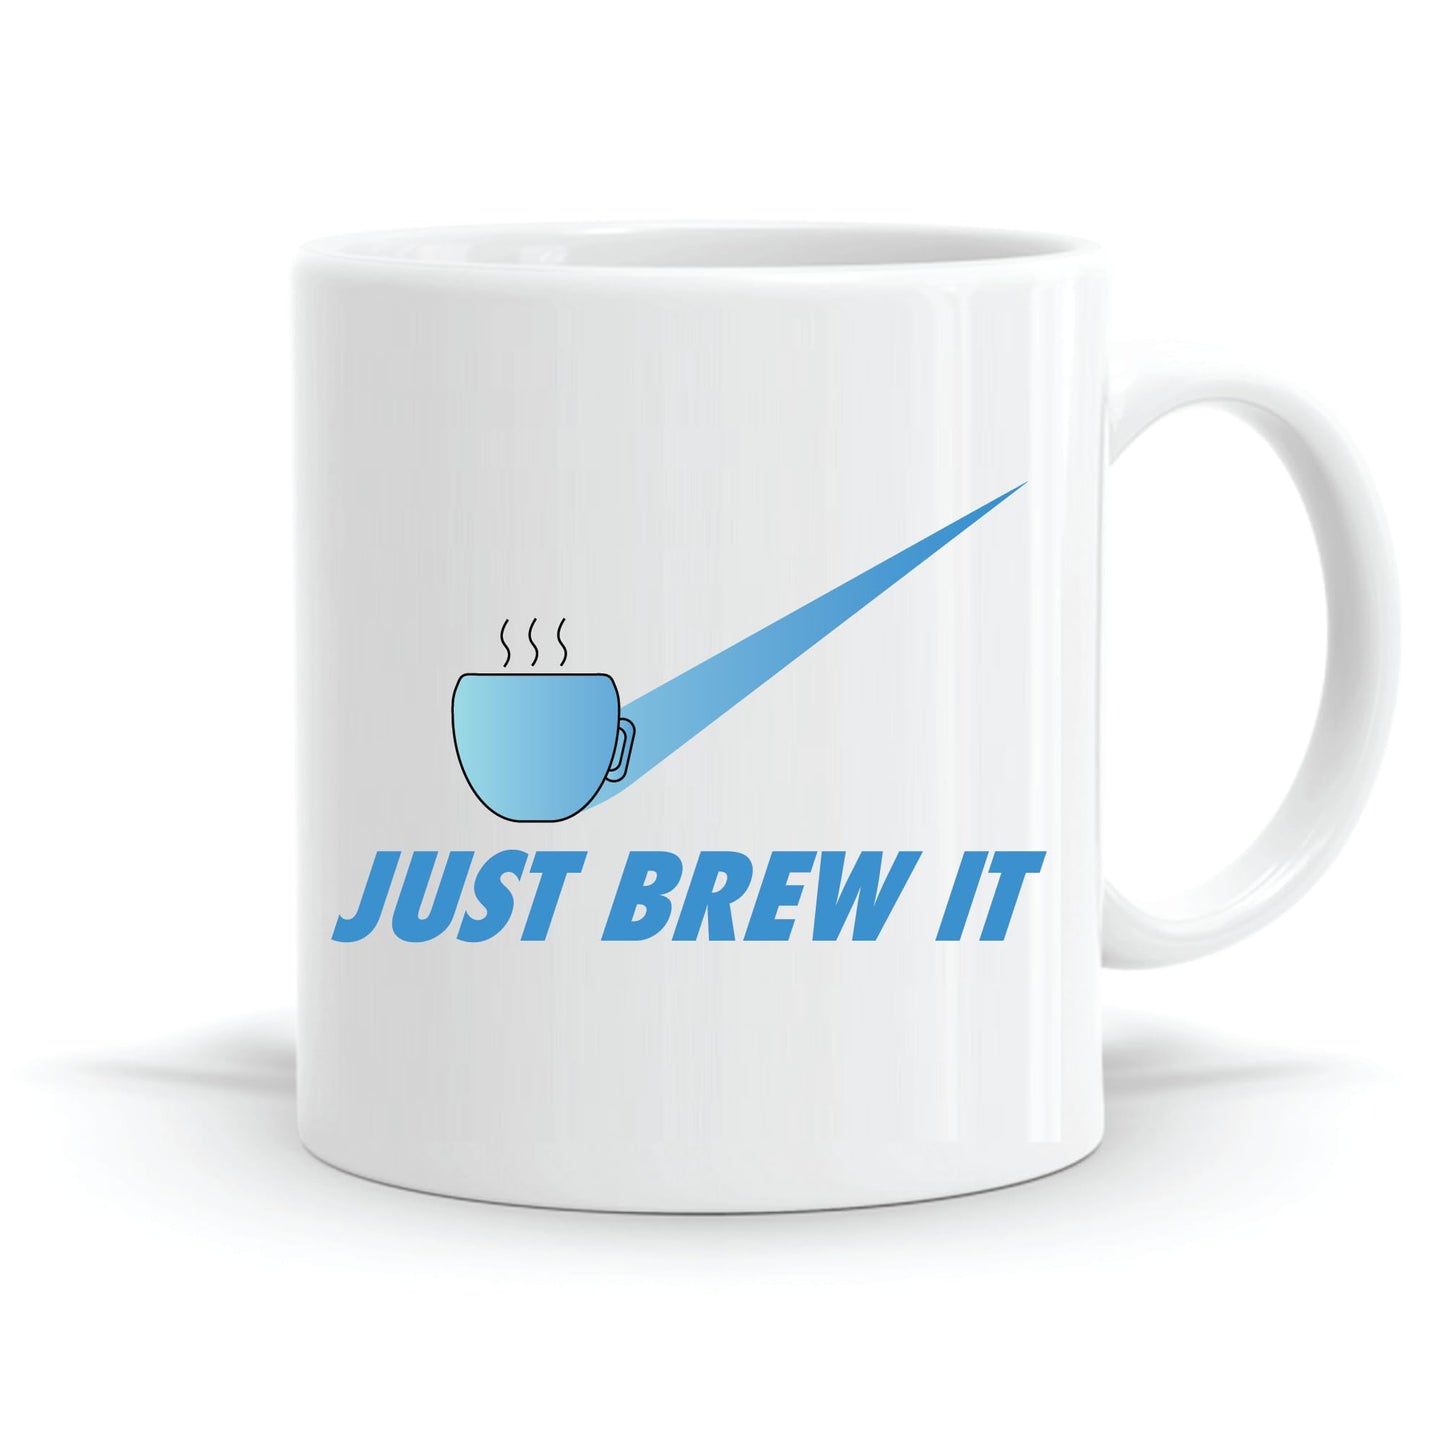 Just Brew It Mug.